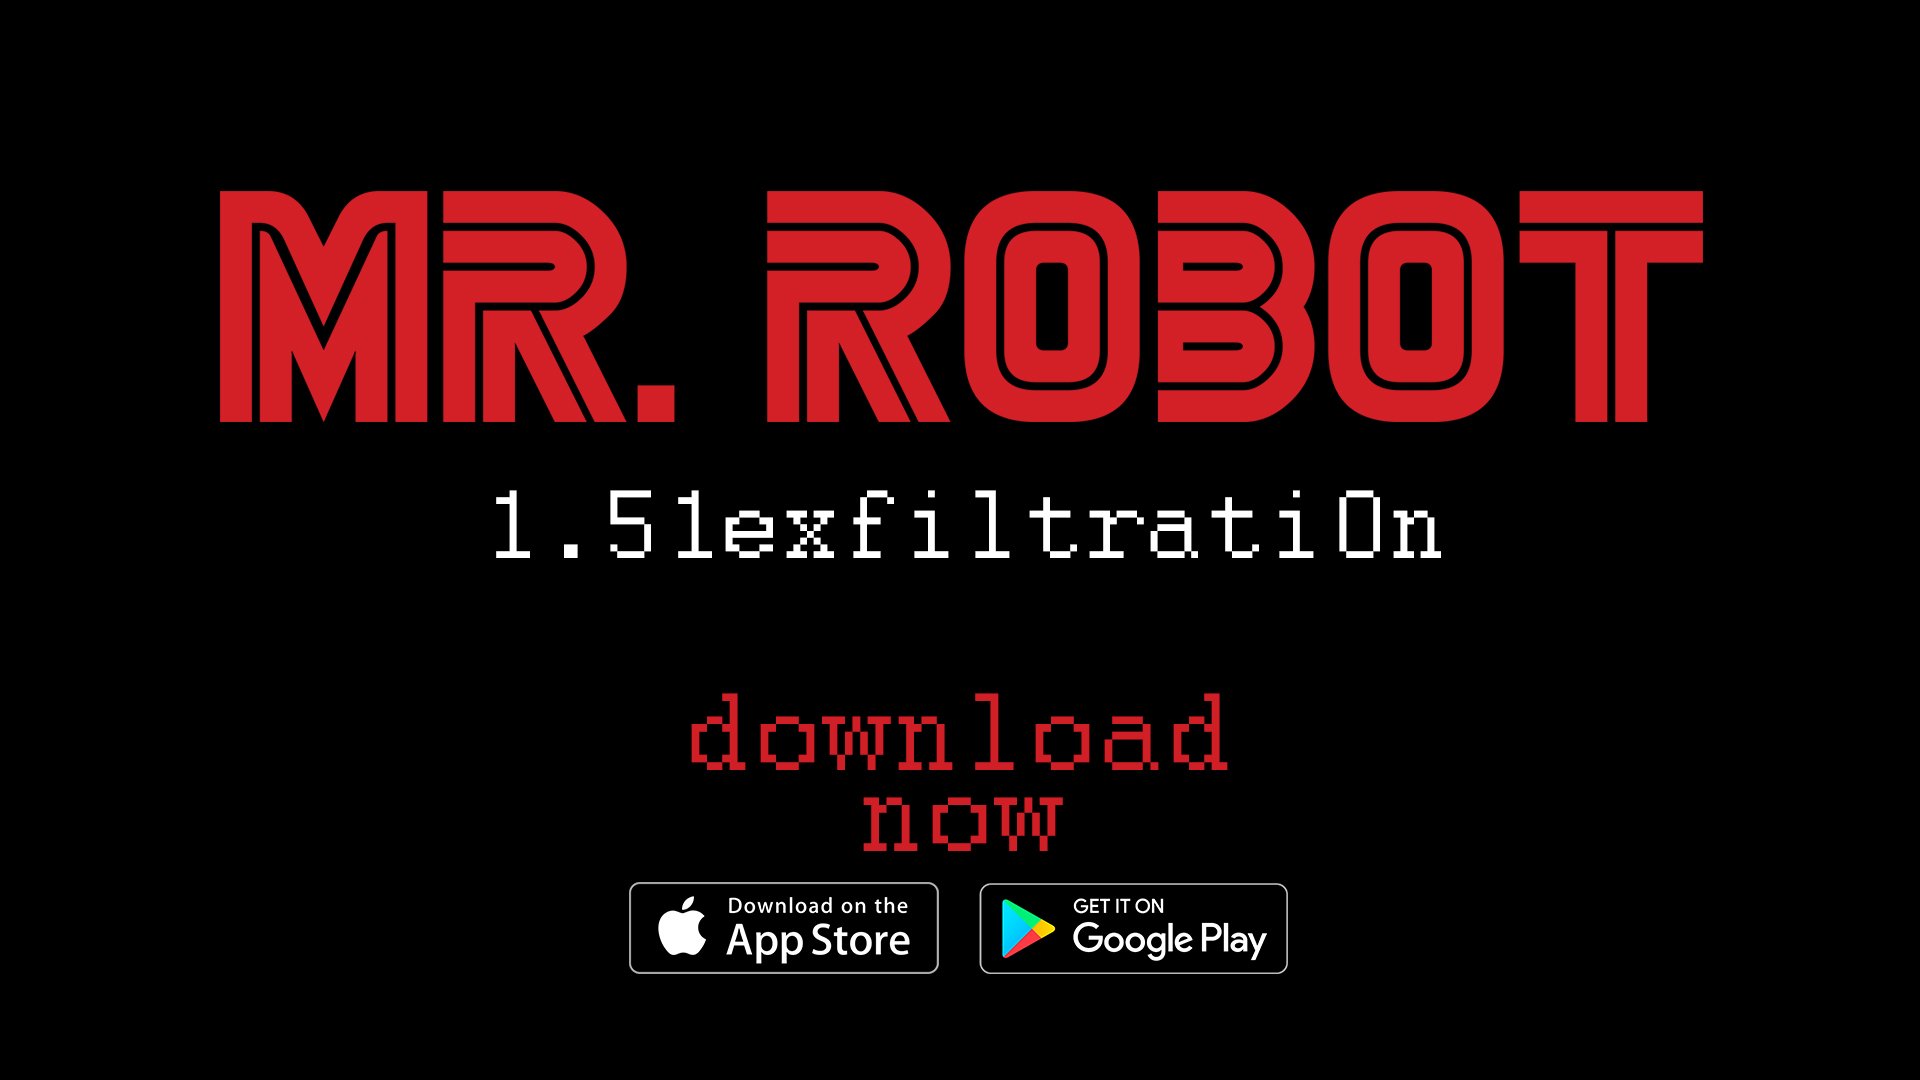 Telltale rilascia Mr. Robot:1.51exfiltrati0n su Android e iOS